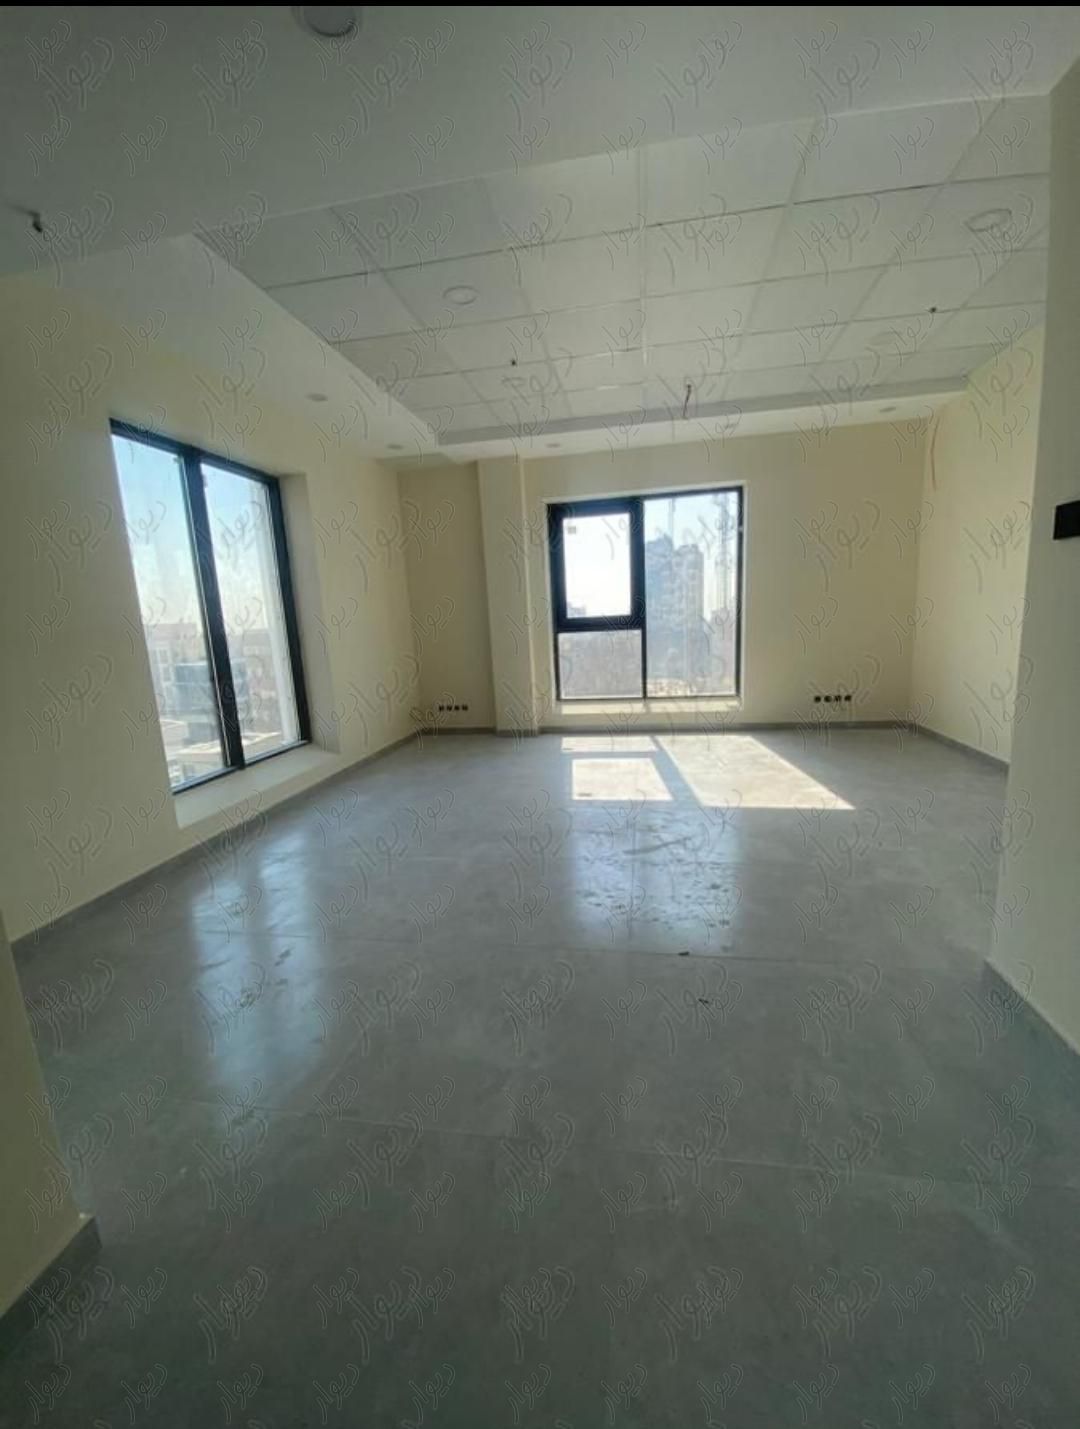 دیباجی جنوبی  کلیدنخورده  40 متر|فروش دفتر کار، دفتر اداری و مطب|تهران, اختیاریه|دیوار